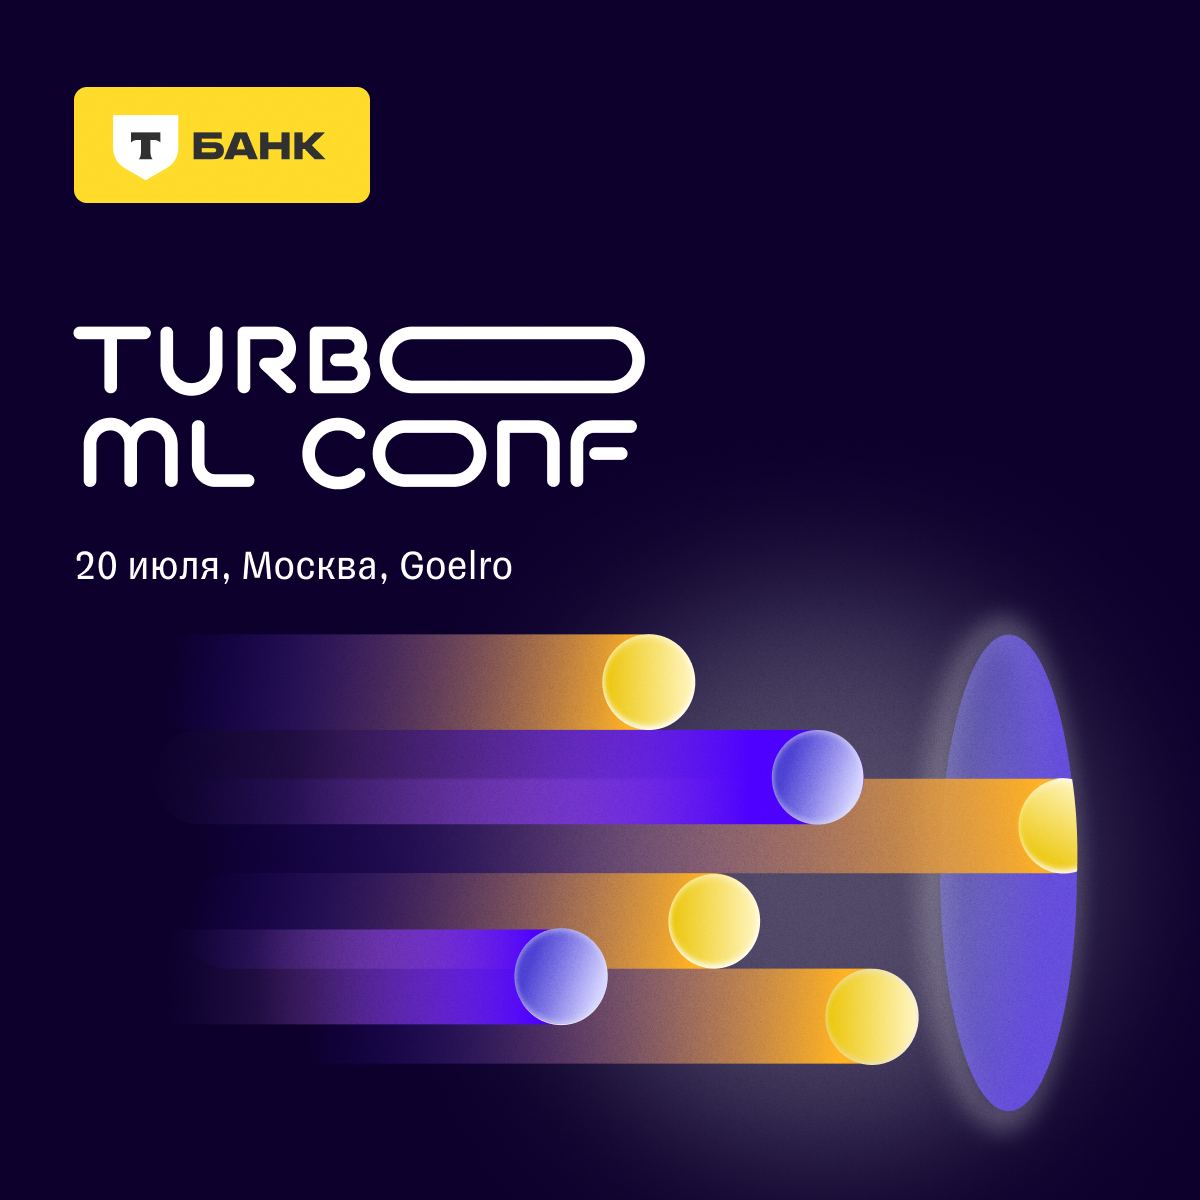 Обложка мероприятия Turbo ML Conf